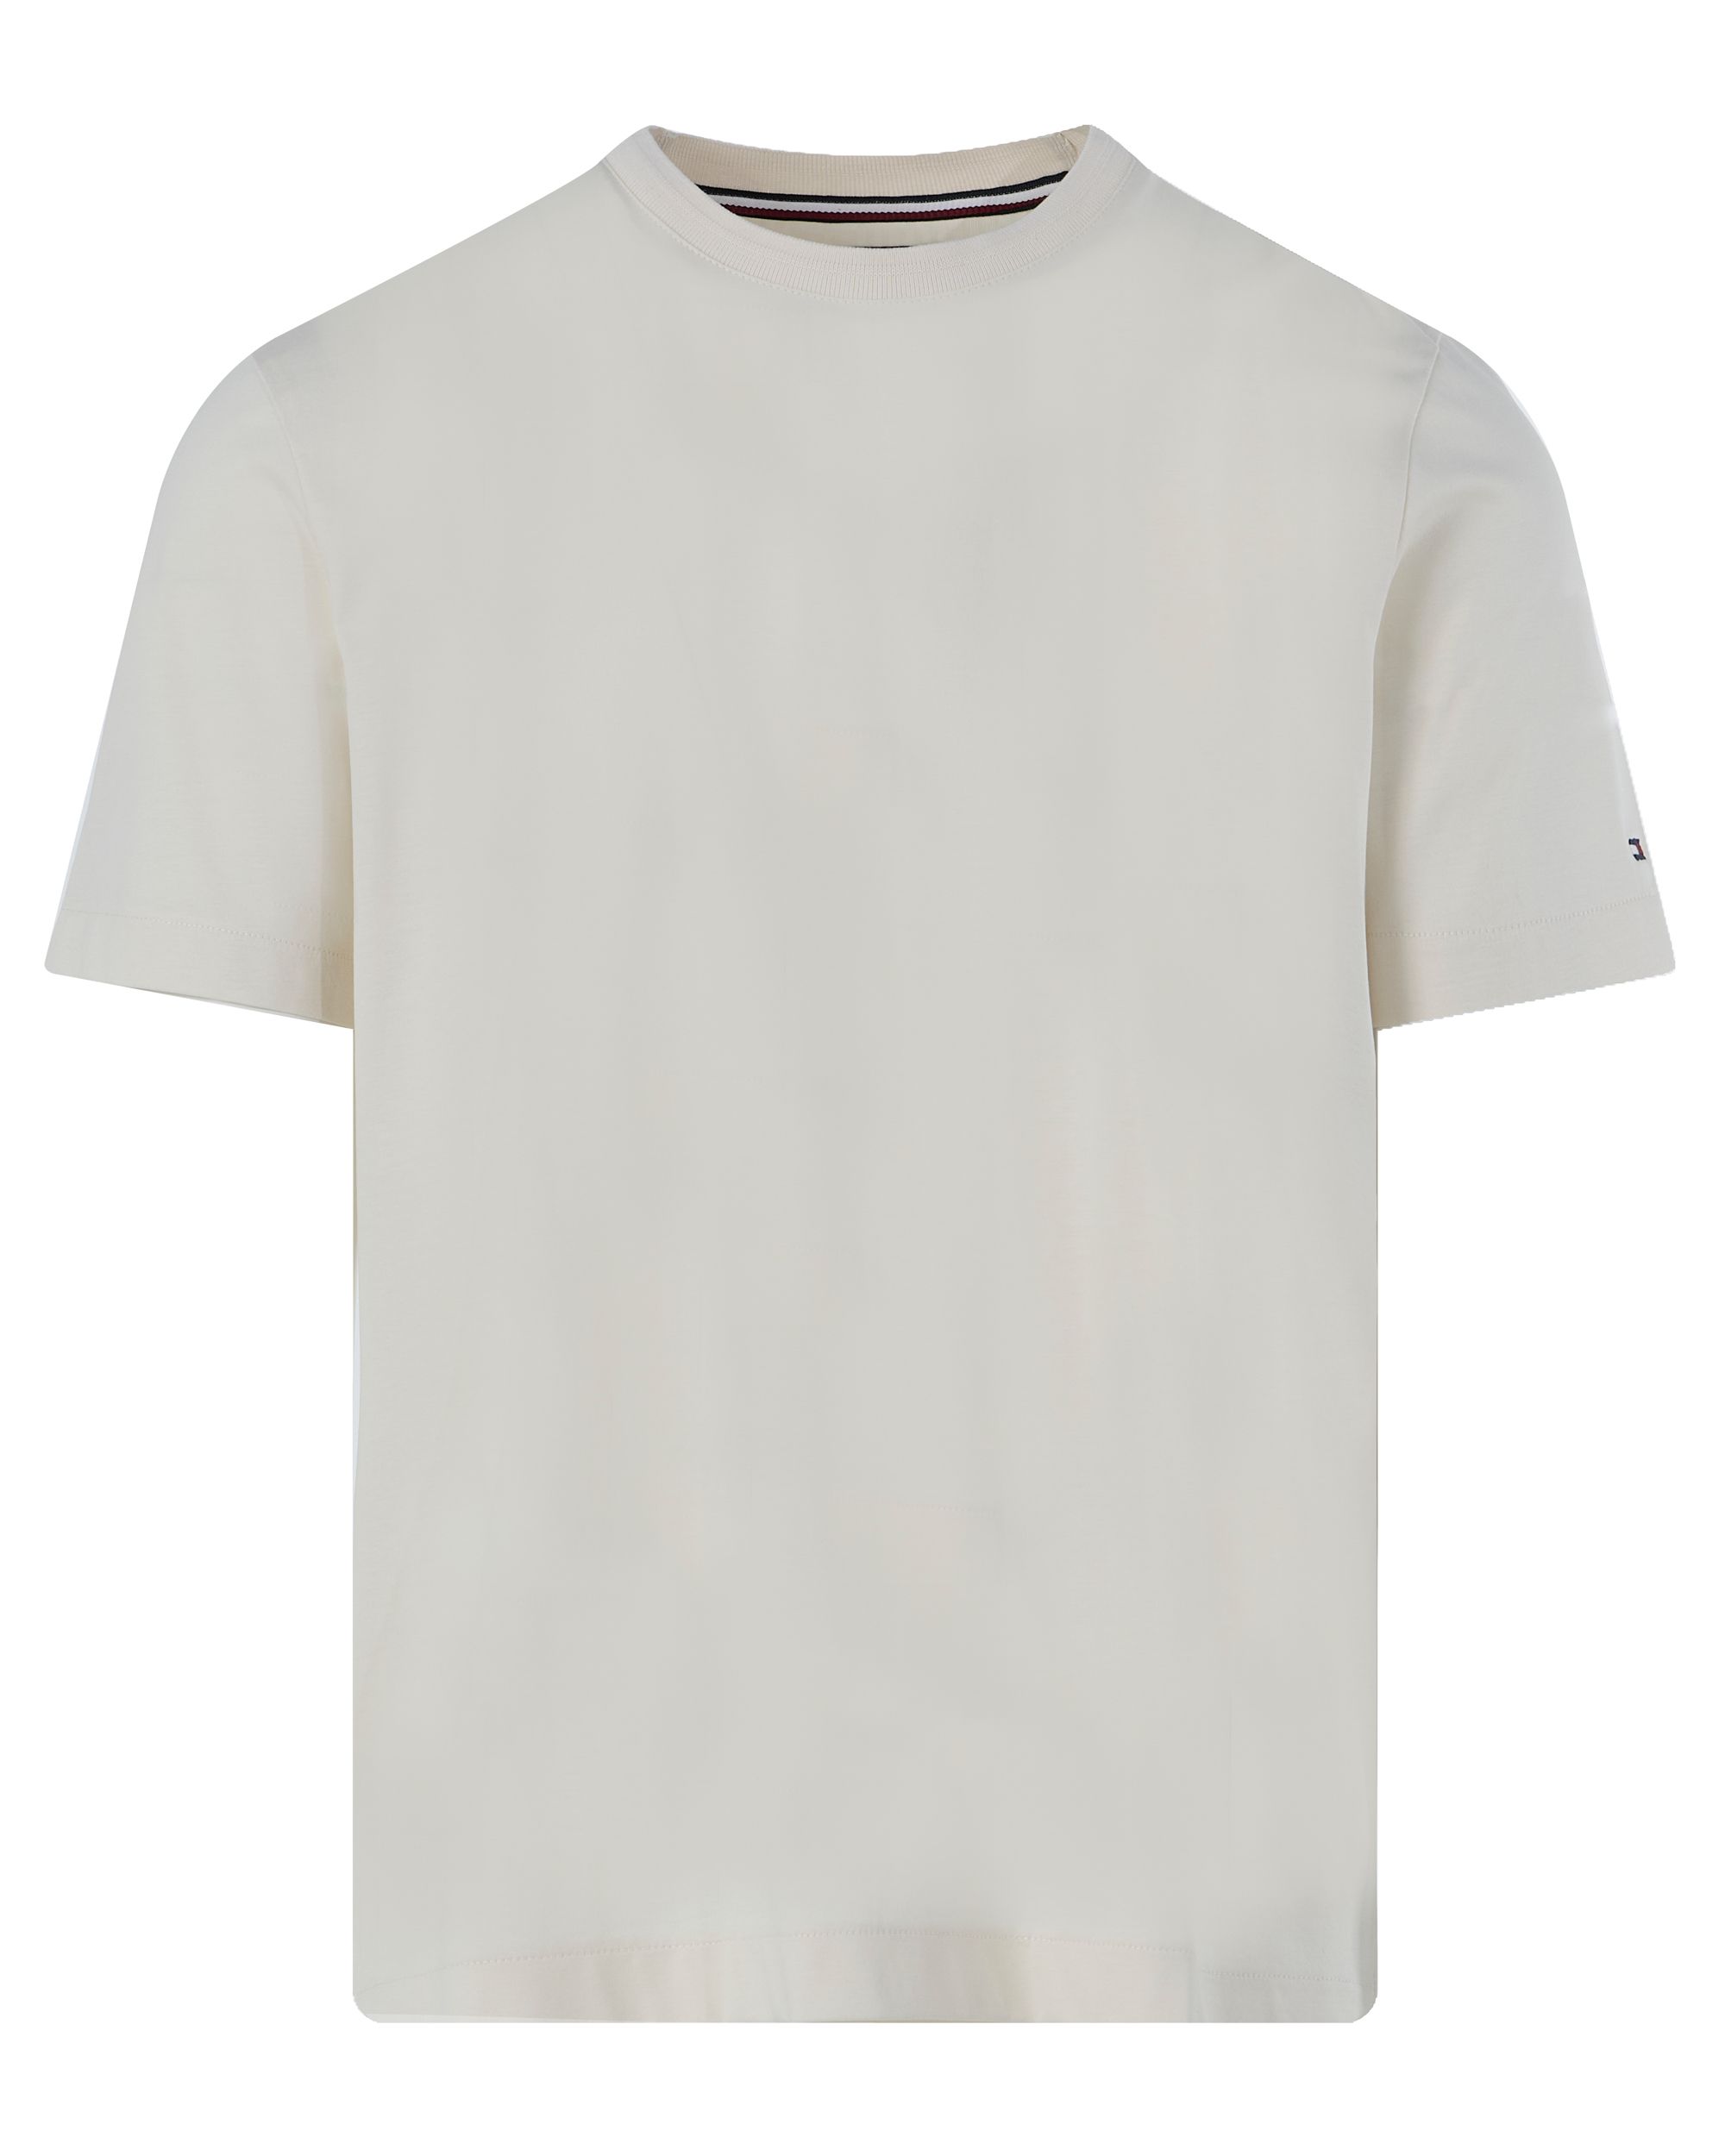 Tommy Hilfiger Menswear T-shirt KM Beige 094638-001-L